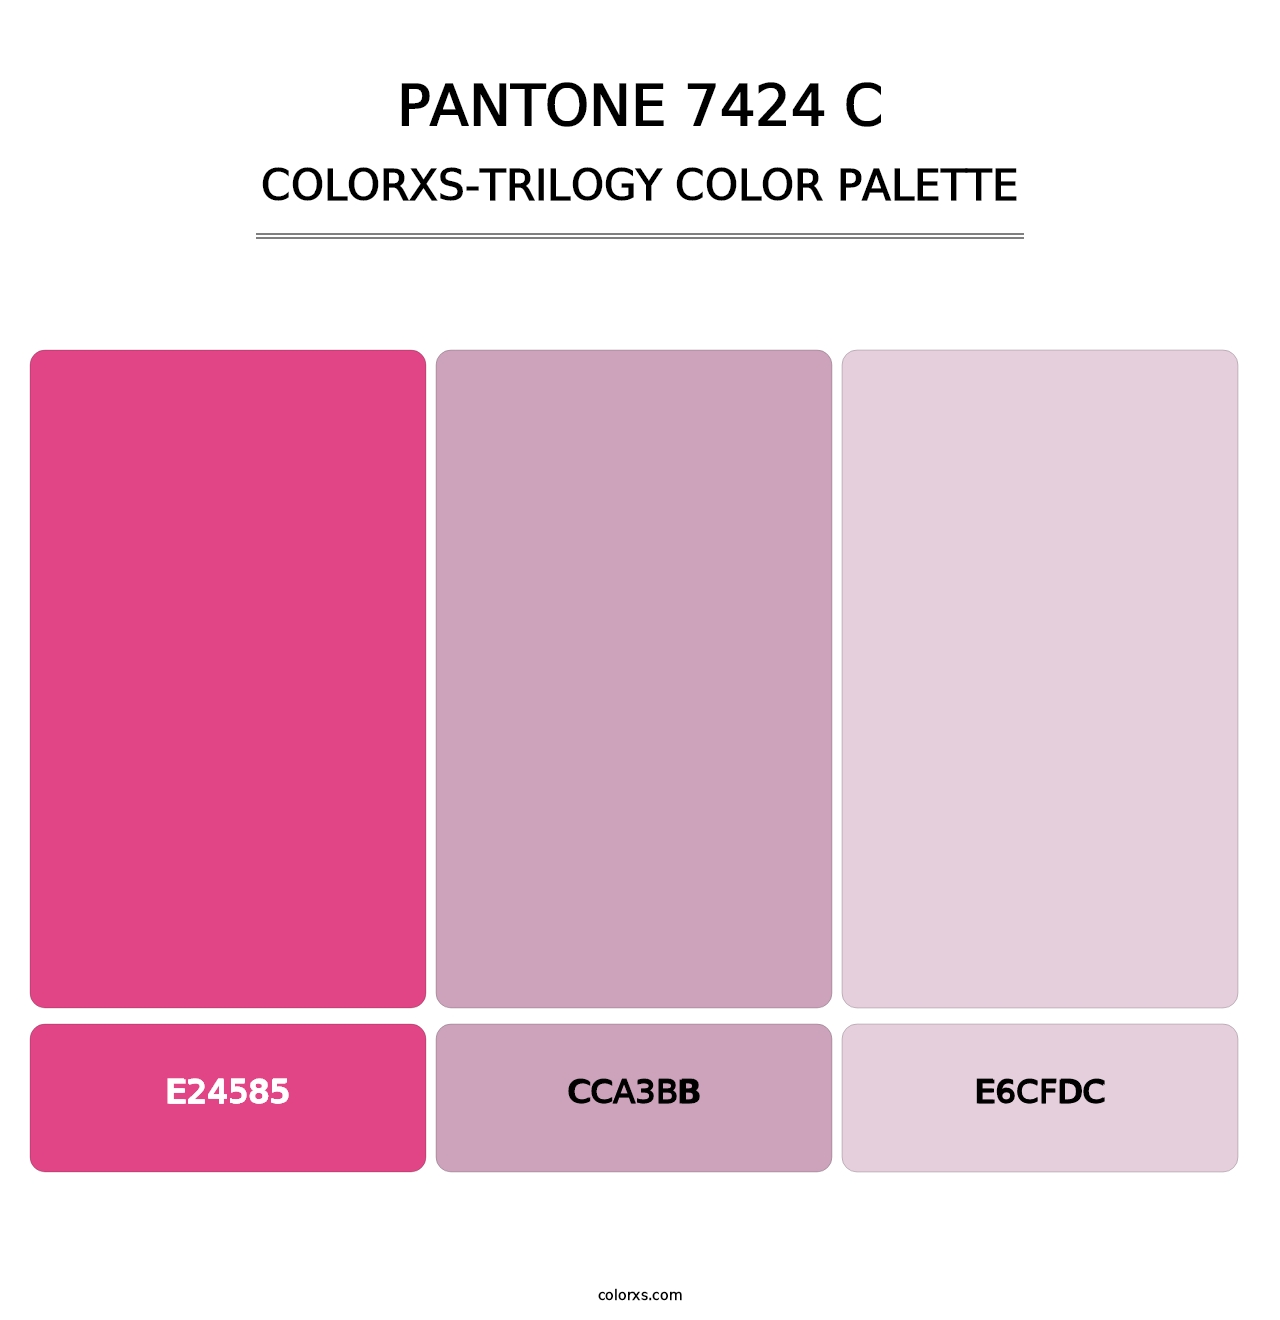 PANTONE 7424 C - Colorxs Trilogy Palette